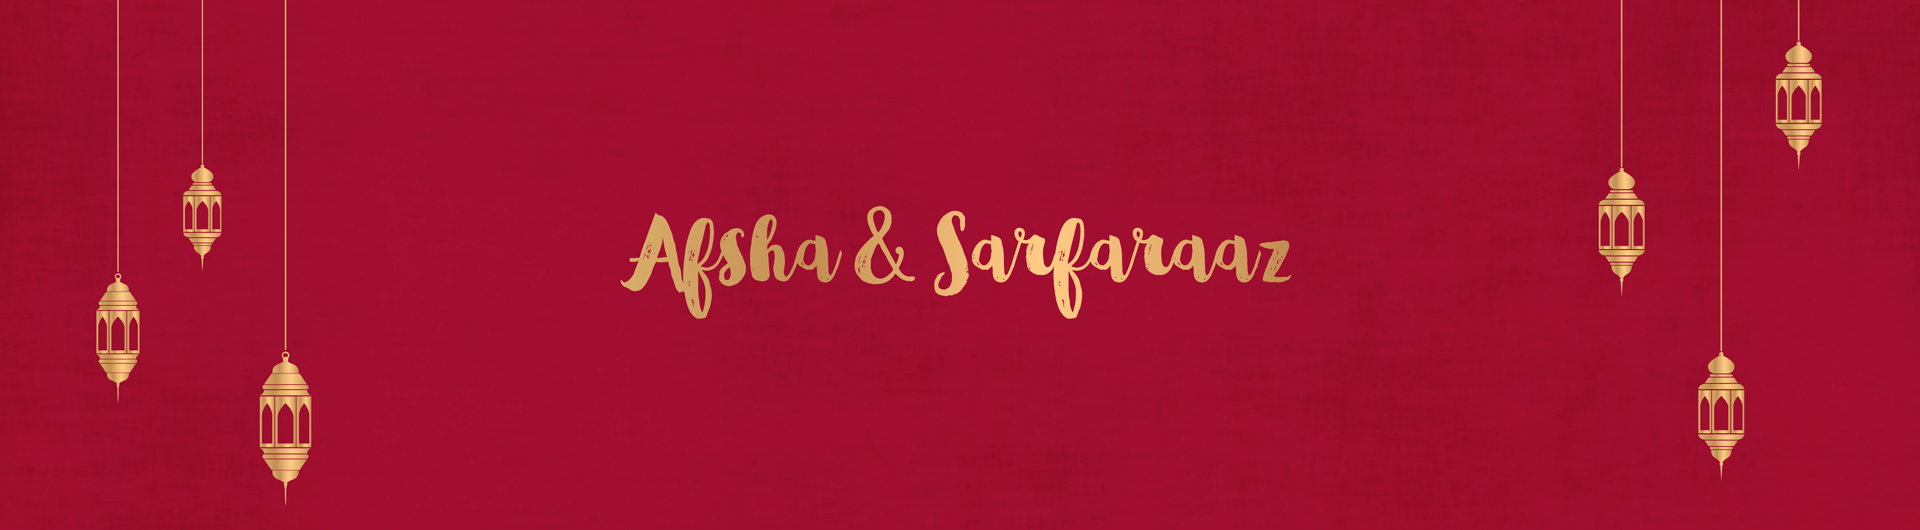 Afsha And Sarfaraaz